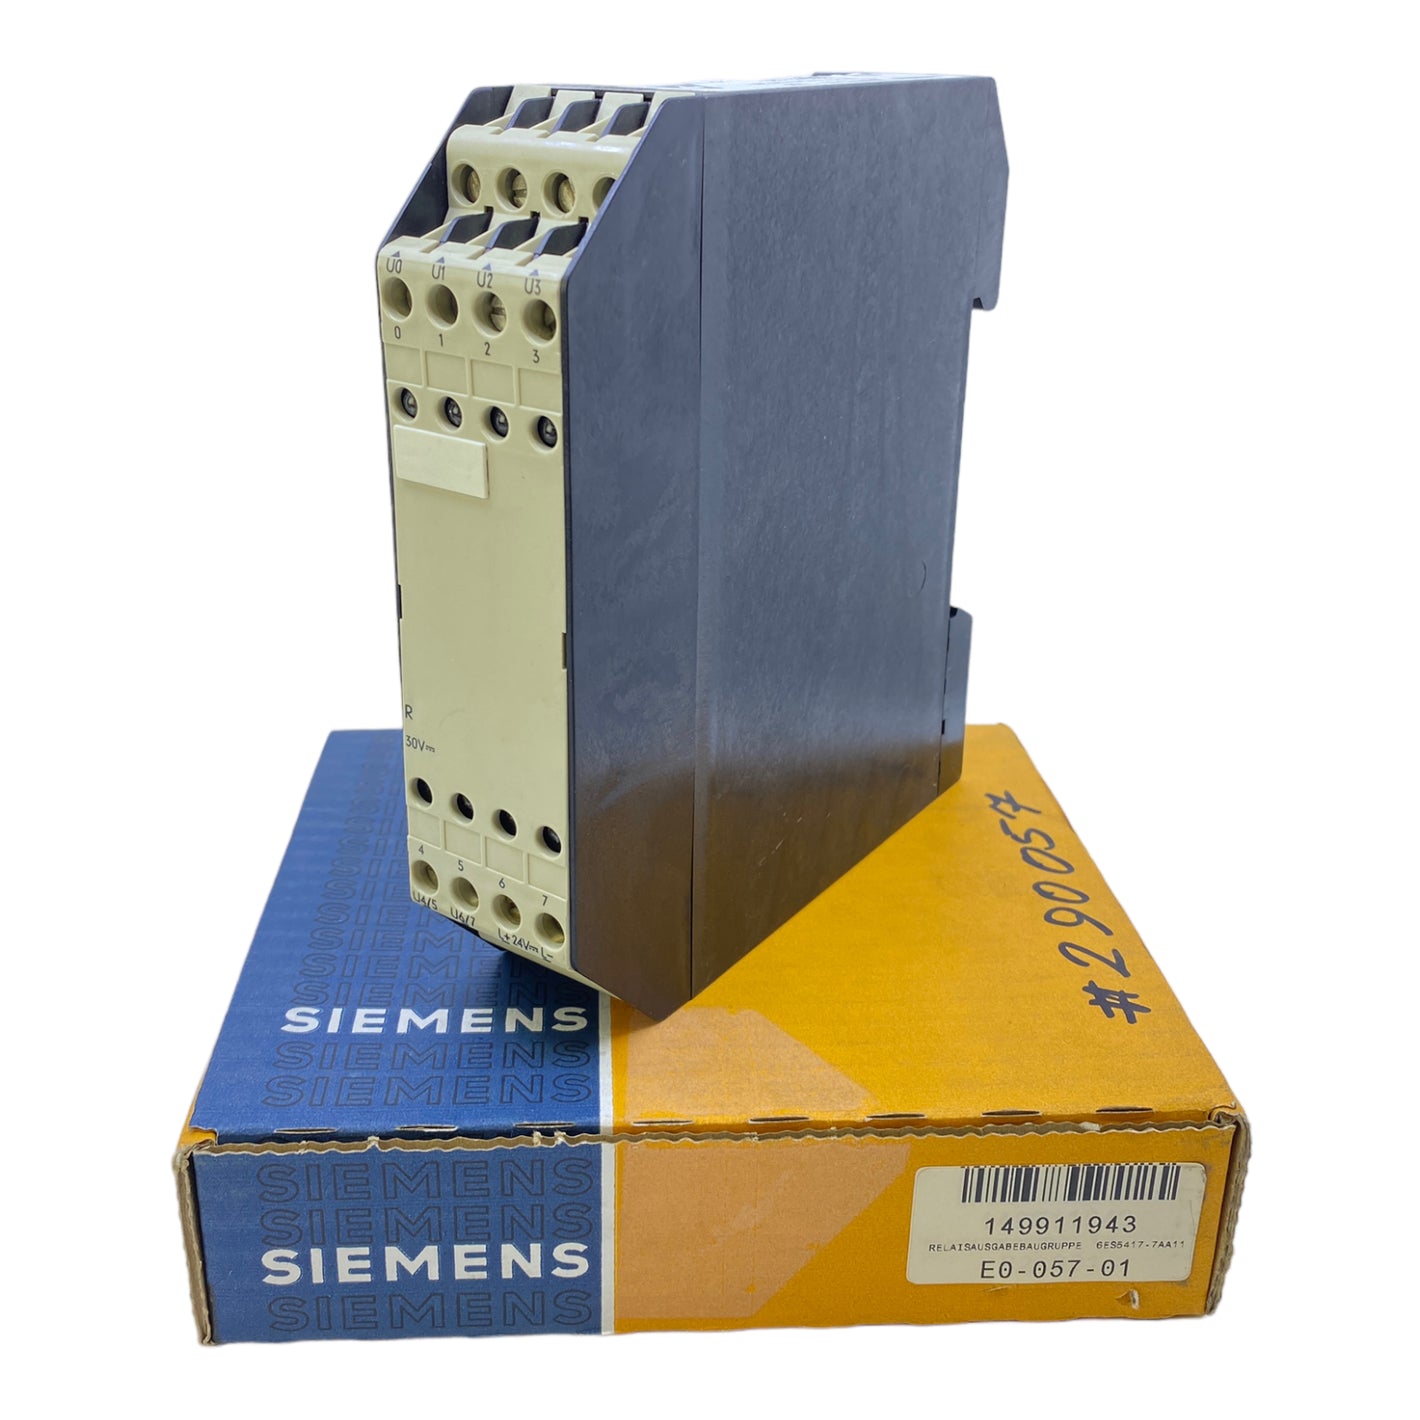 Siemens 6ES5417-7AA11 Relaisbaugruppe 30V